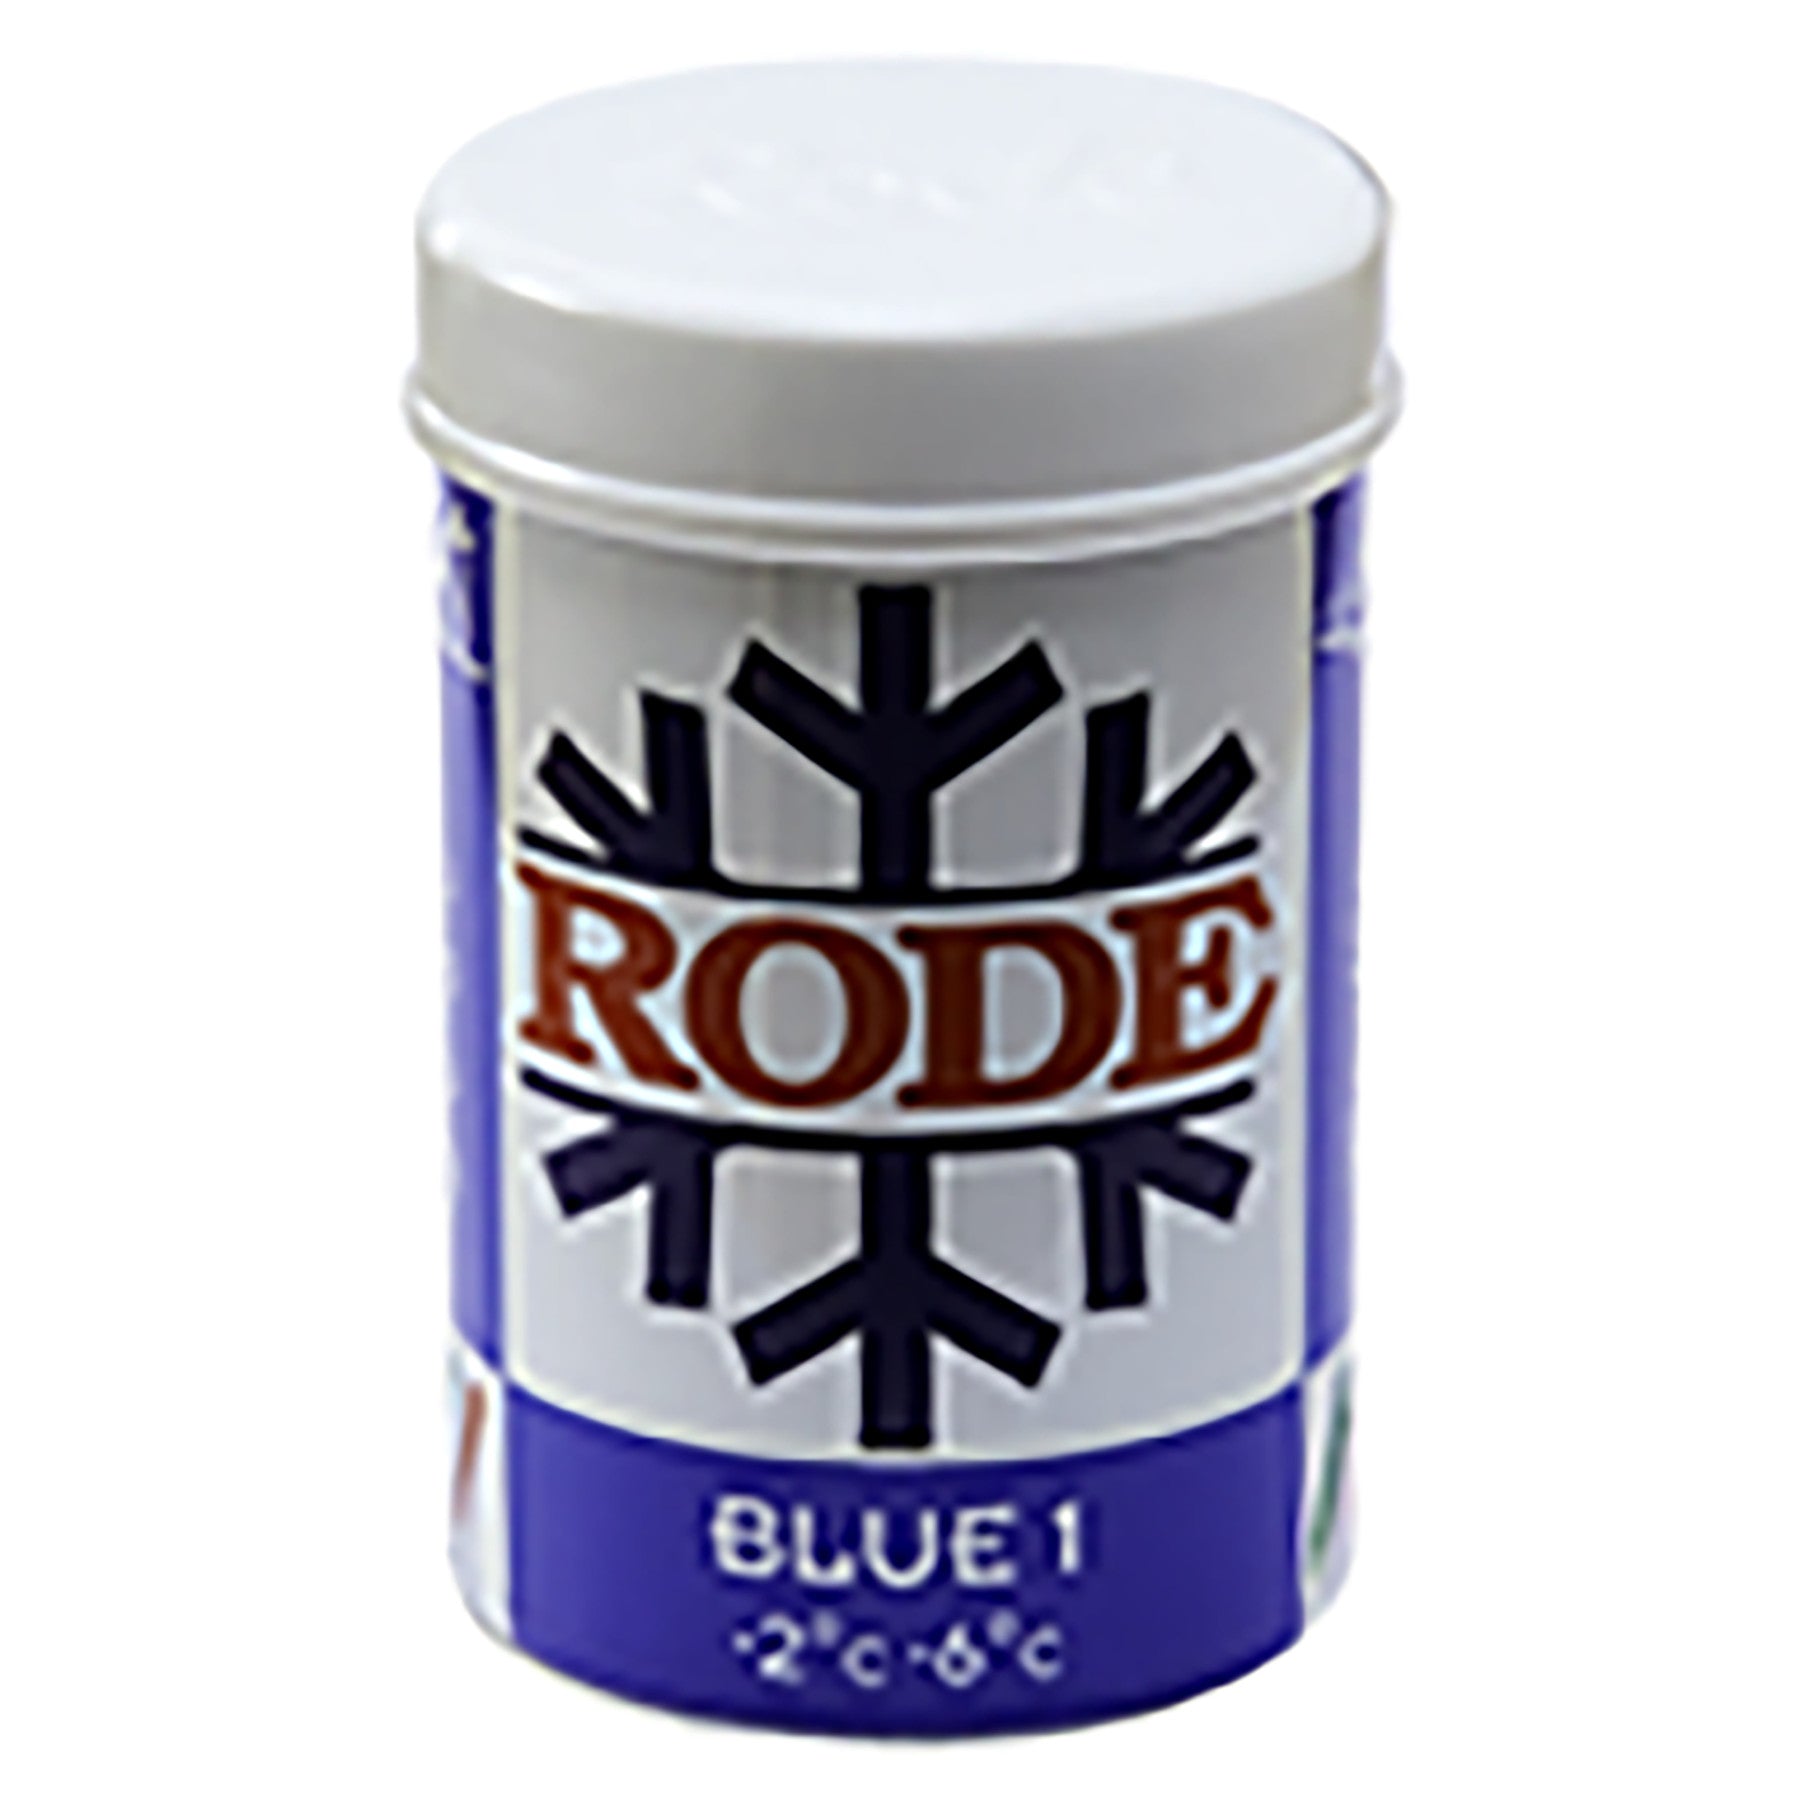 Buy blue-i Rode Kick Basic